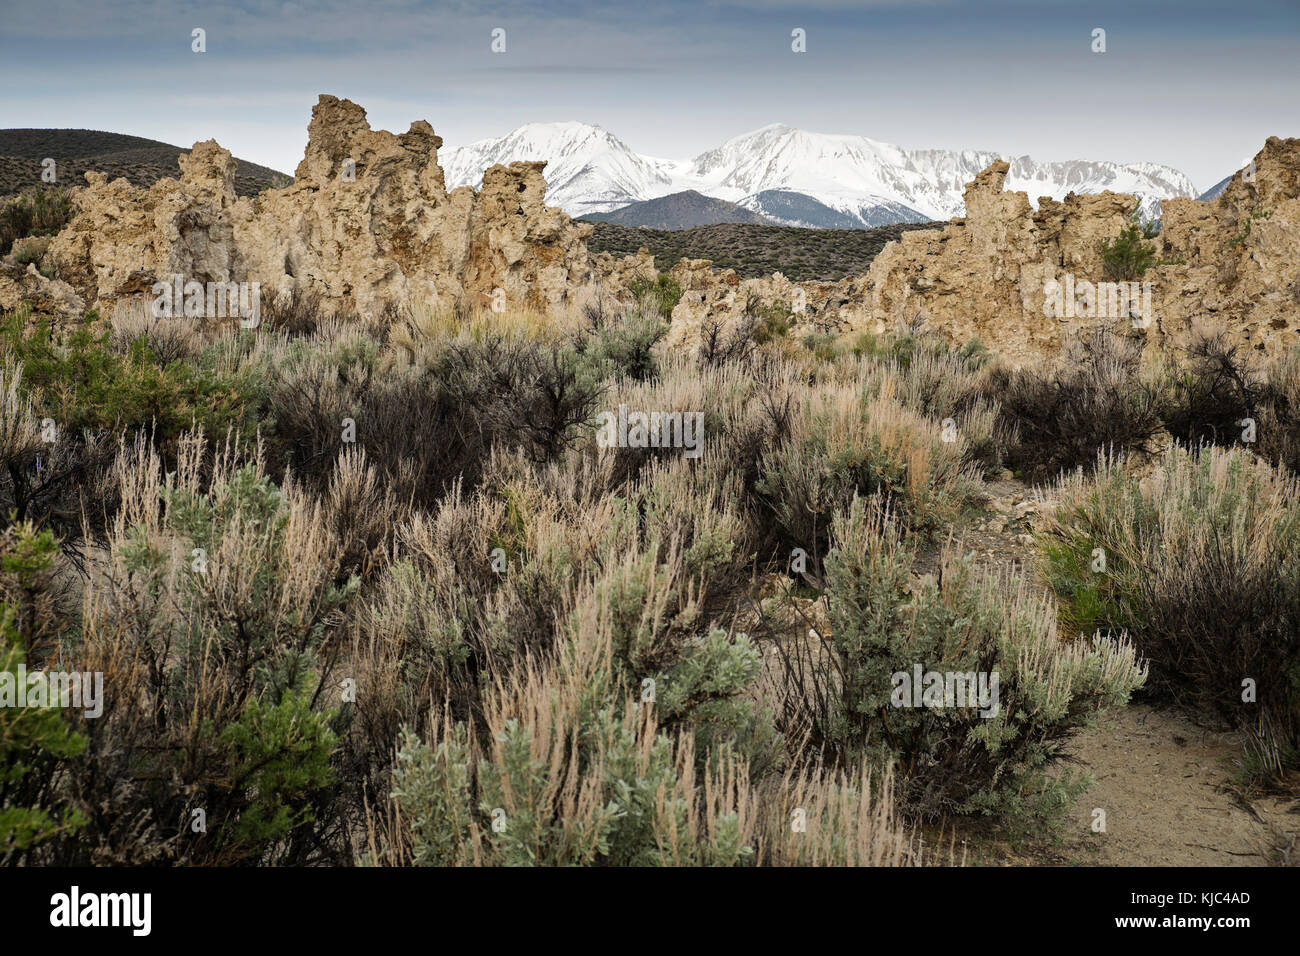 Formations rocheuses et végétation du lac Mono avec les montagnes de la Sierra Nevada en arrière-plan en Californie de l'est, aux États-Unis Banque D'Images